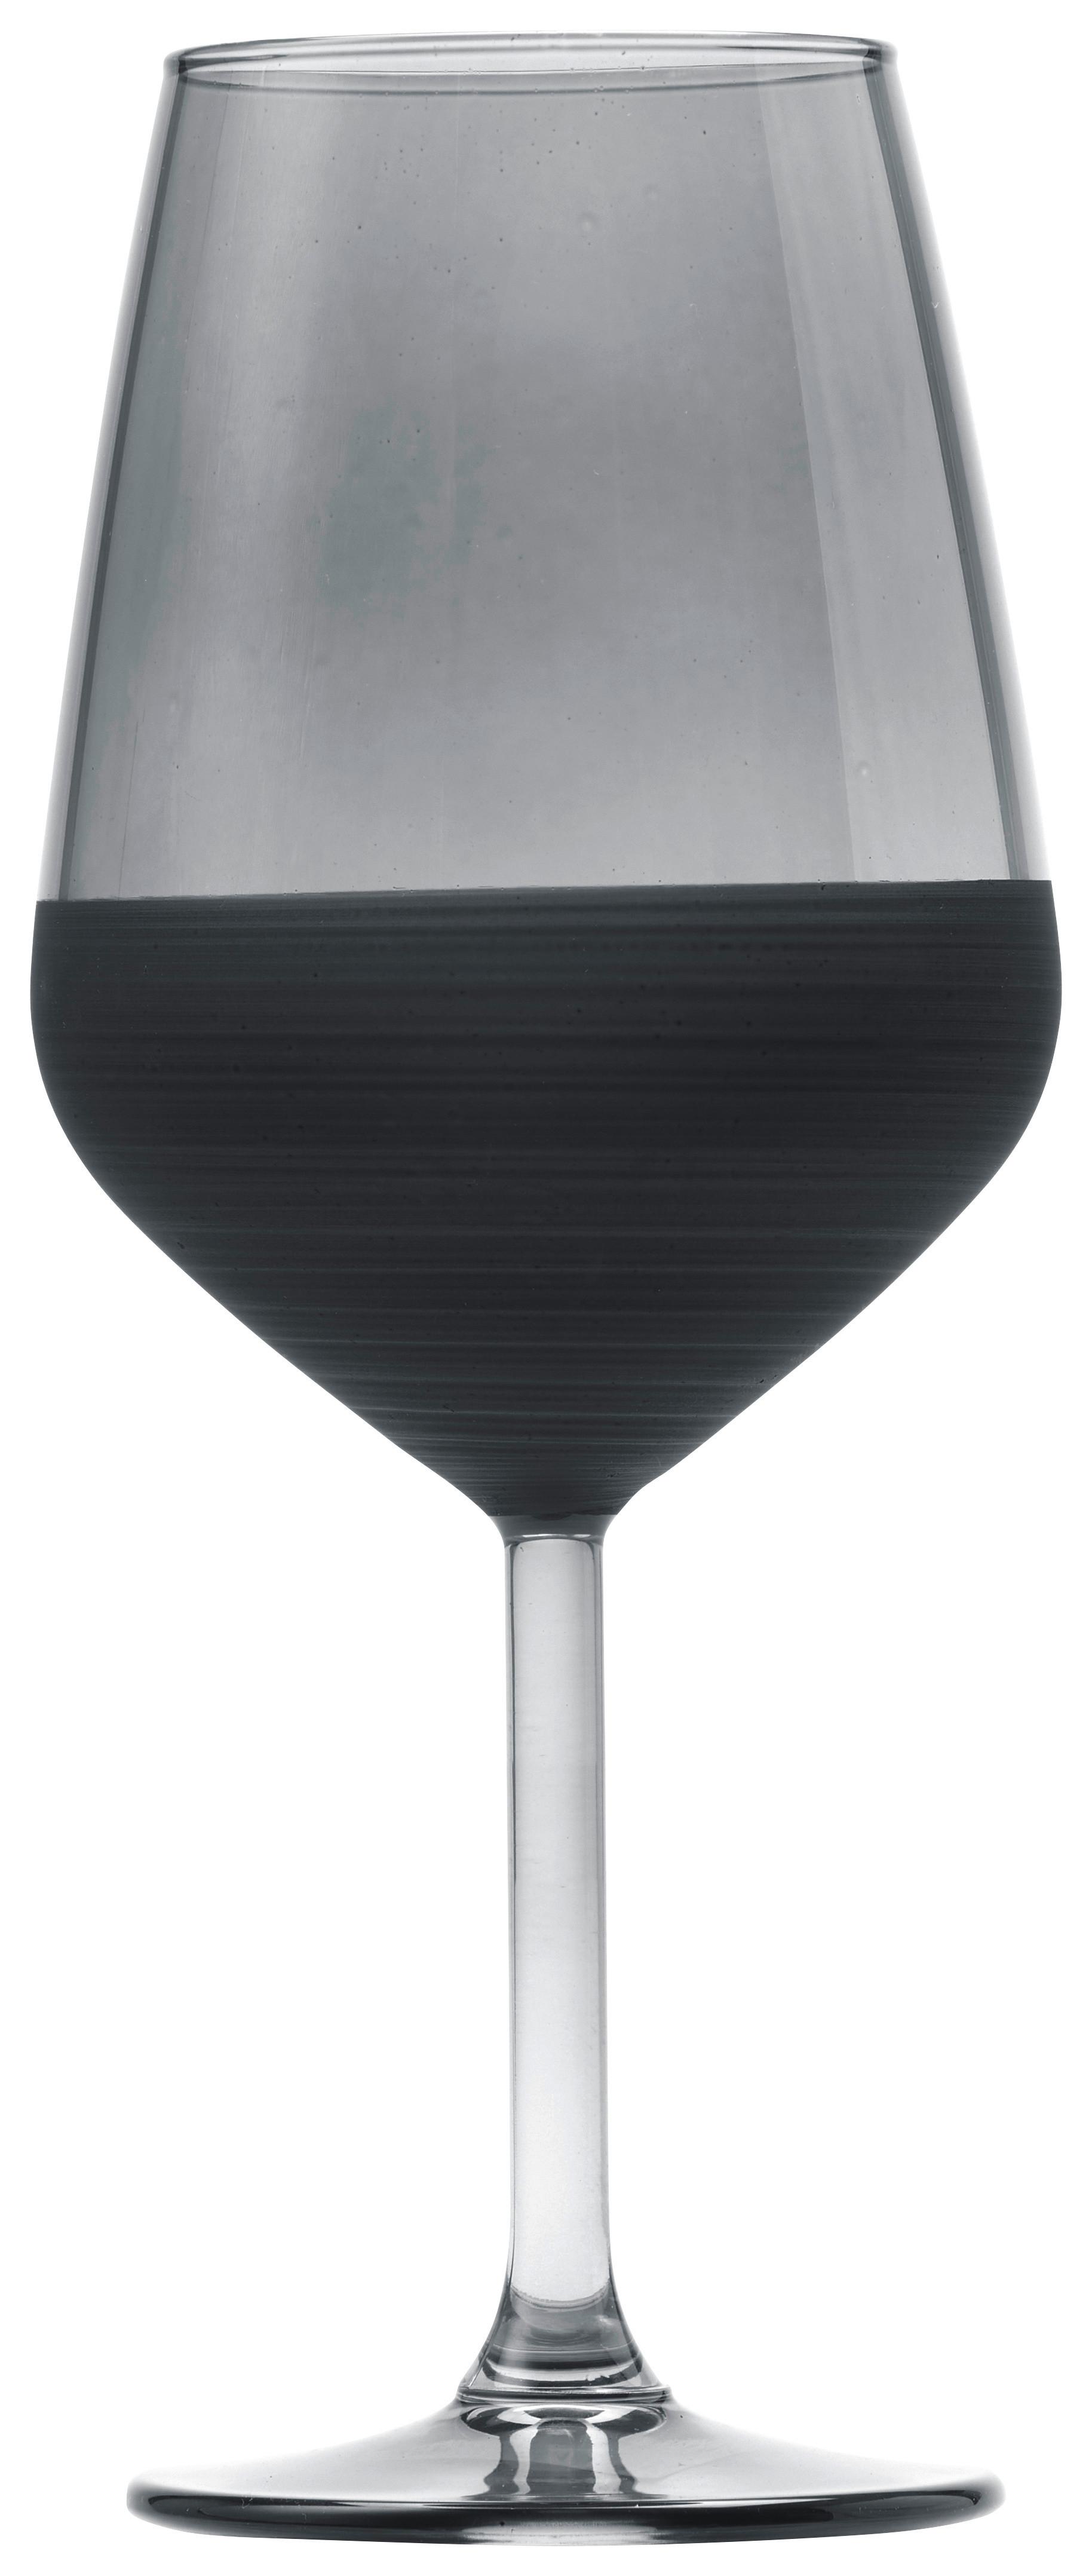 Weinglas Black ca. 490ml - Schwarz, MODERN, Glas (6,4/22cm) - Premium Living